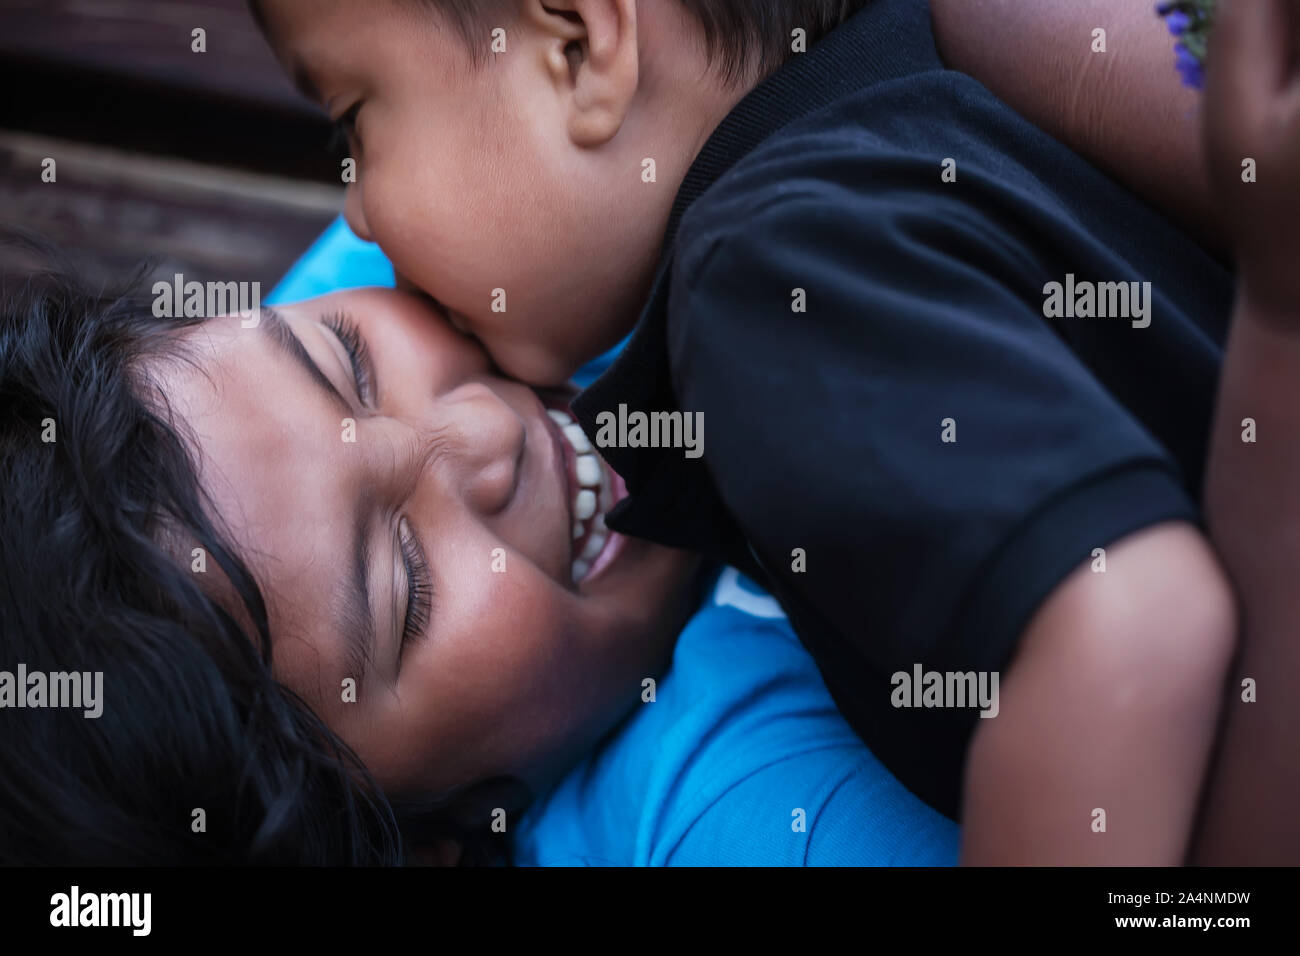 Einen kleinen Bruder gibt seine grosse Schwester einen Kuss auf die Wange, während Sie lacht laut in der Freude. Stockfoto